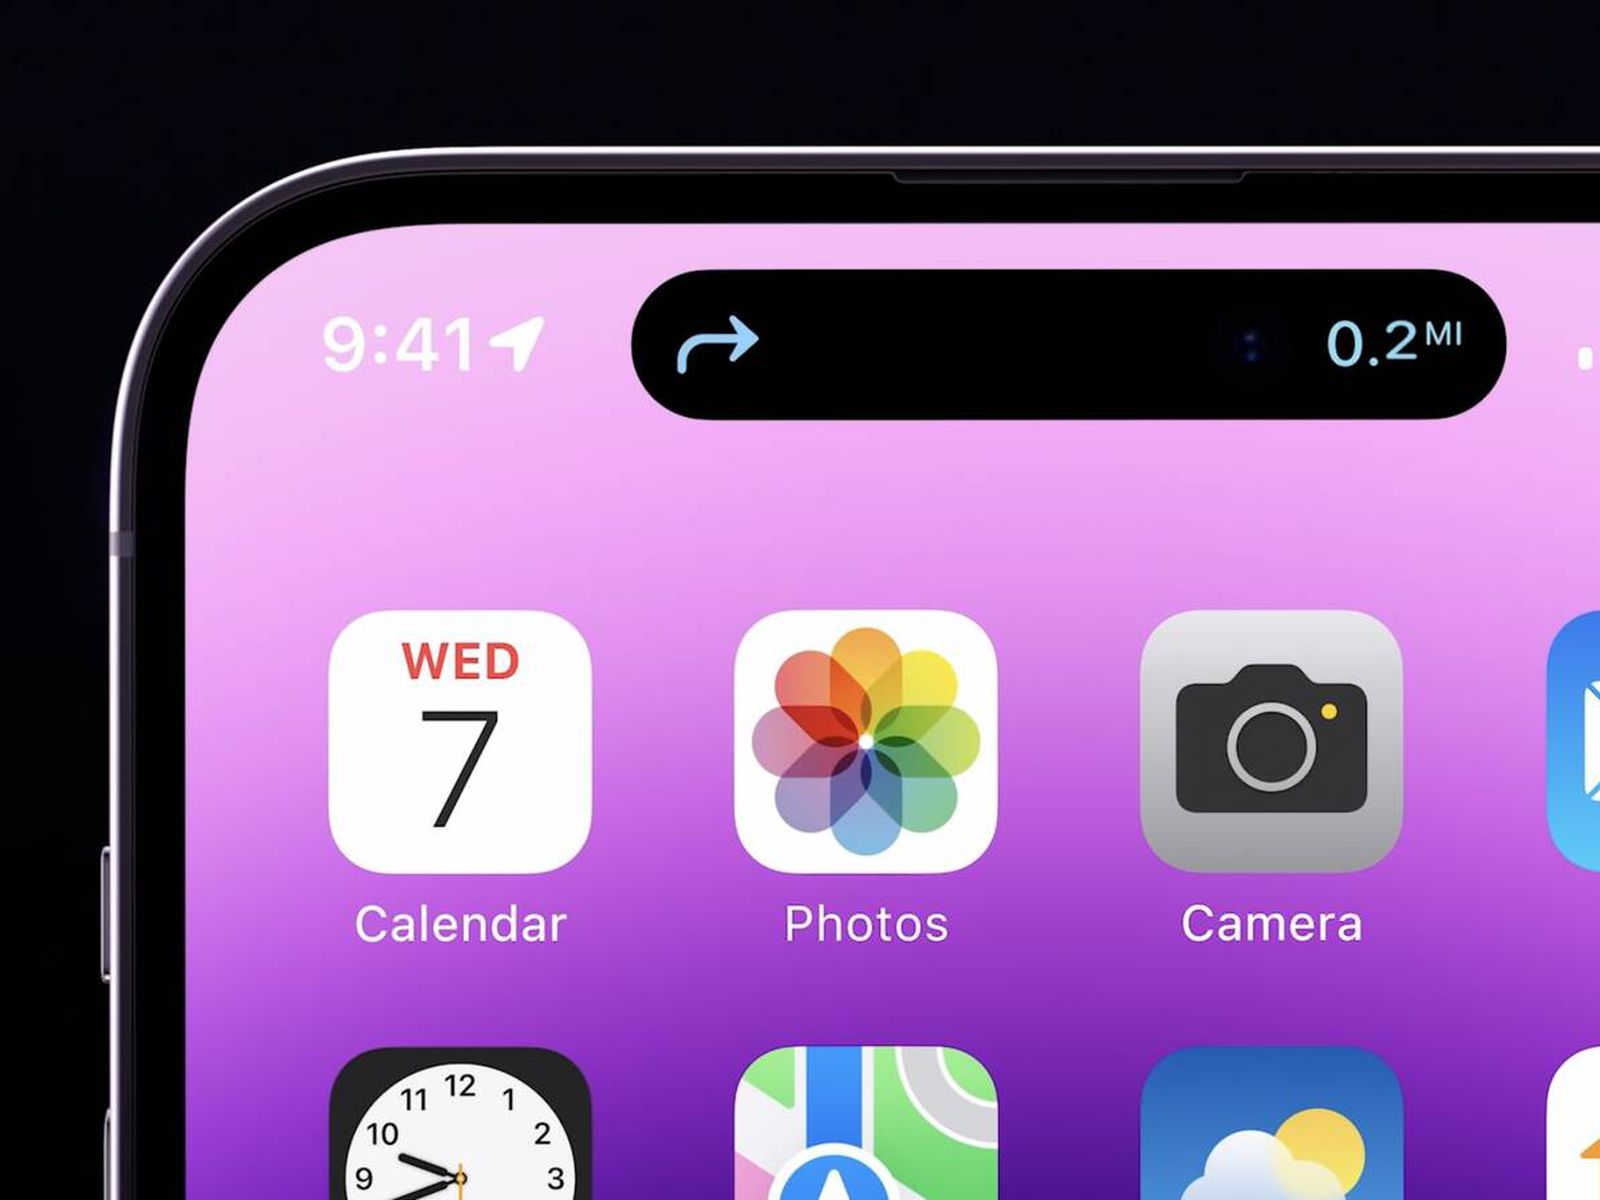 iPhone 14 Pro: Điện thoại iPhone 14 Pro đã đến và không ngừng đem đến những trải nghiệm đỉnh cao cho người sử dụng. Tính năng mạnh mẽ, màn hình đầy màu sắc và thiết kế đẳng cấp chắc chắn sẽ khiến bạn không thể rời mắt khỏi chiếc điện thoại này. Hãy khám phá thêm về iPhone 14 Pro và trải nghiệm những điều tuyệt vời nhất của nó.